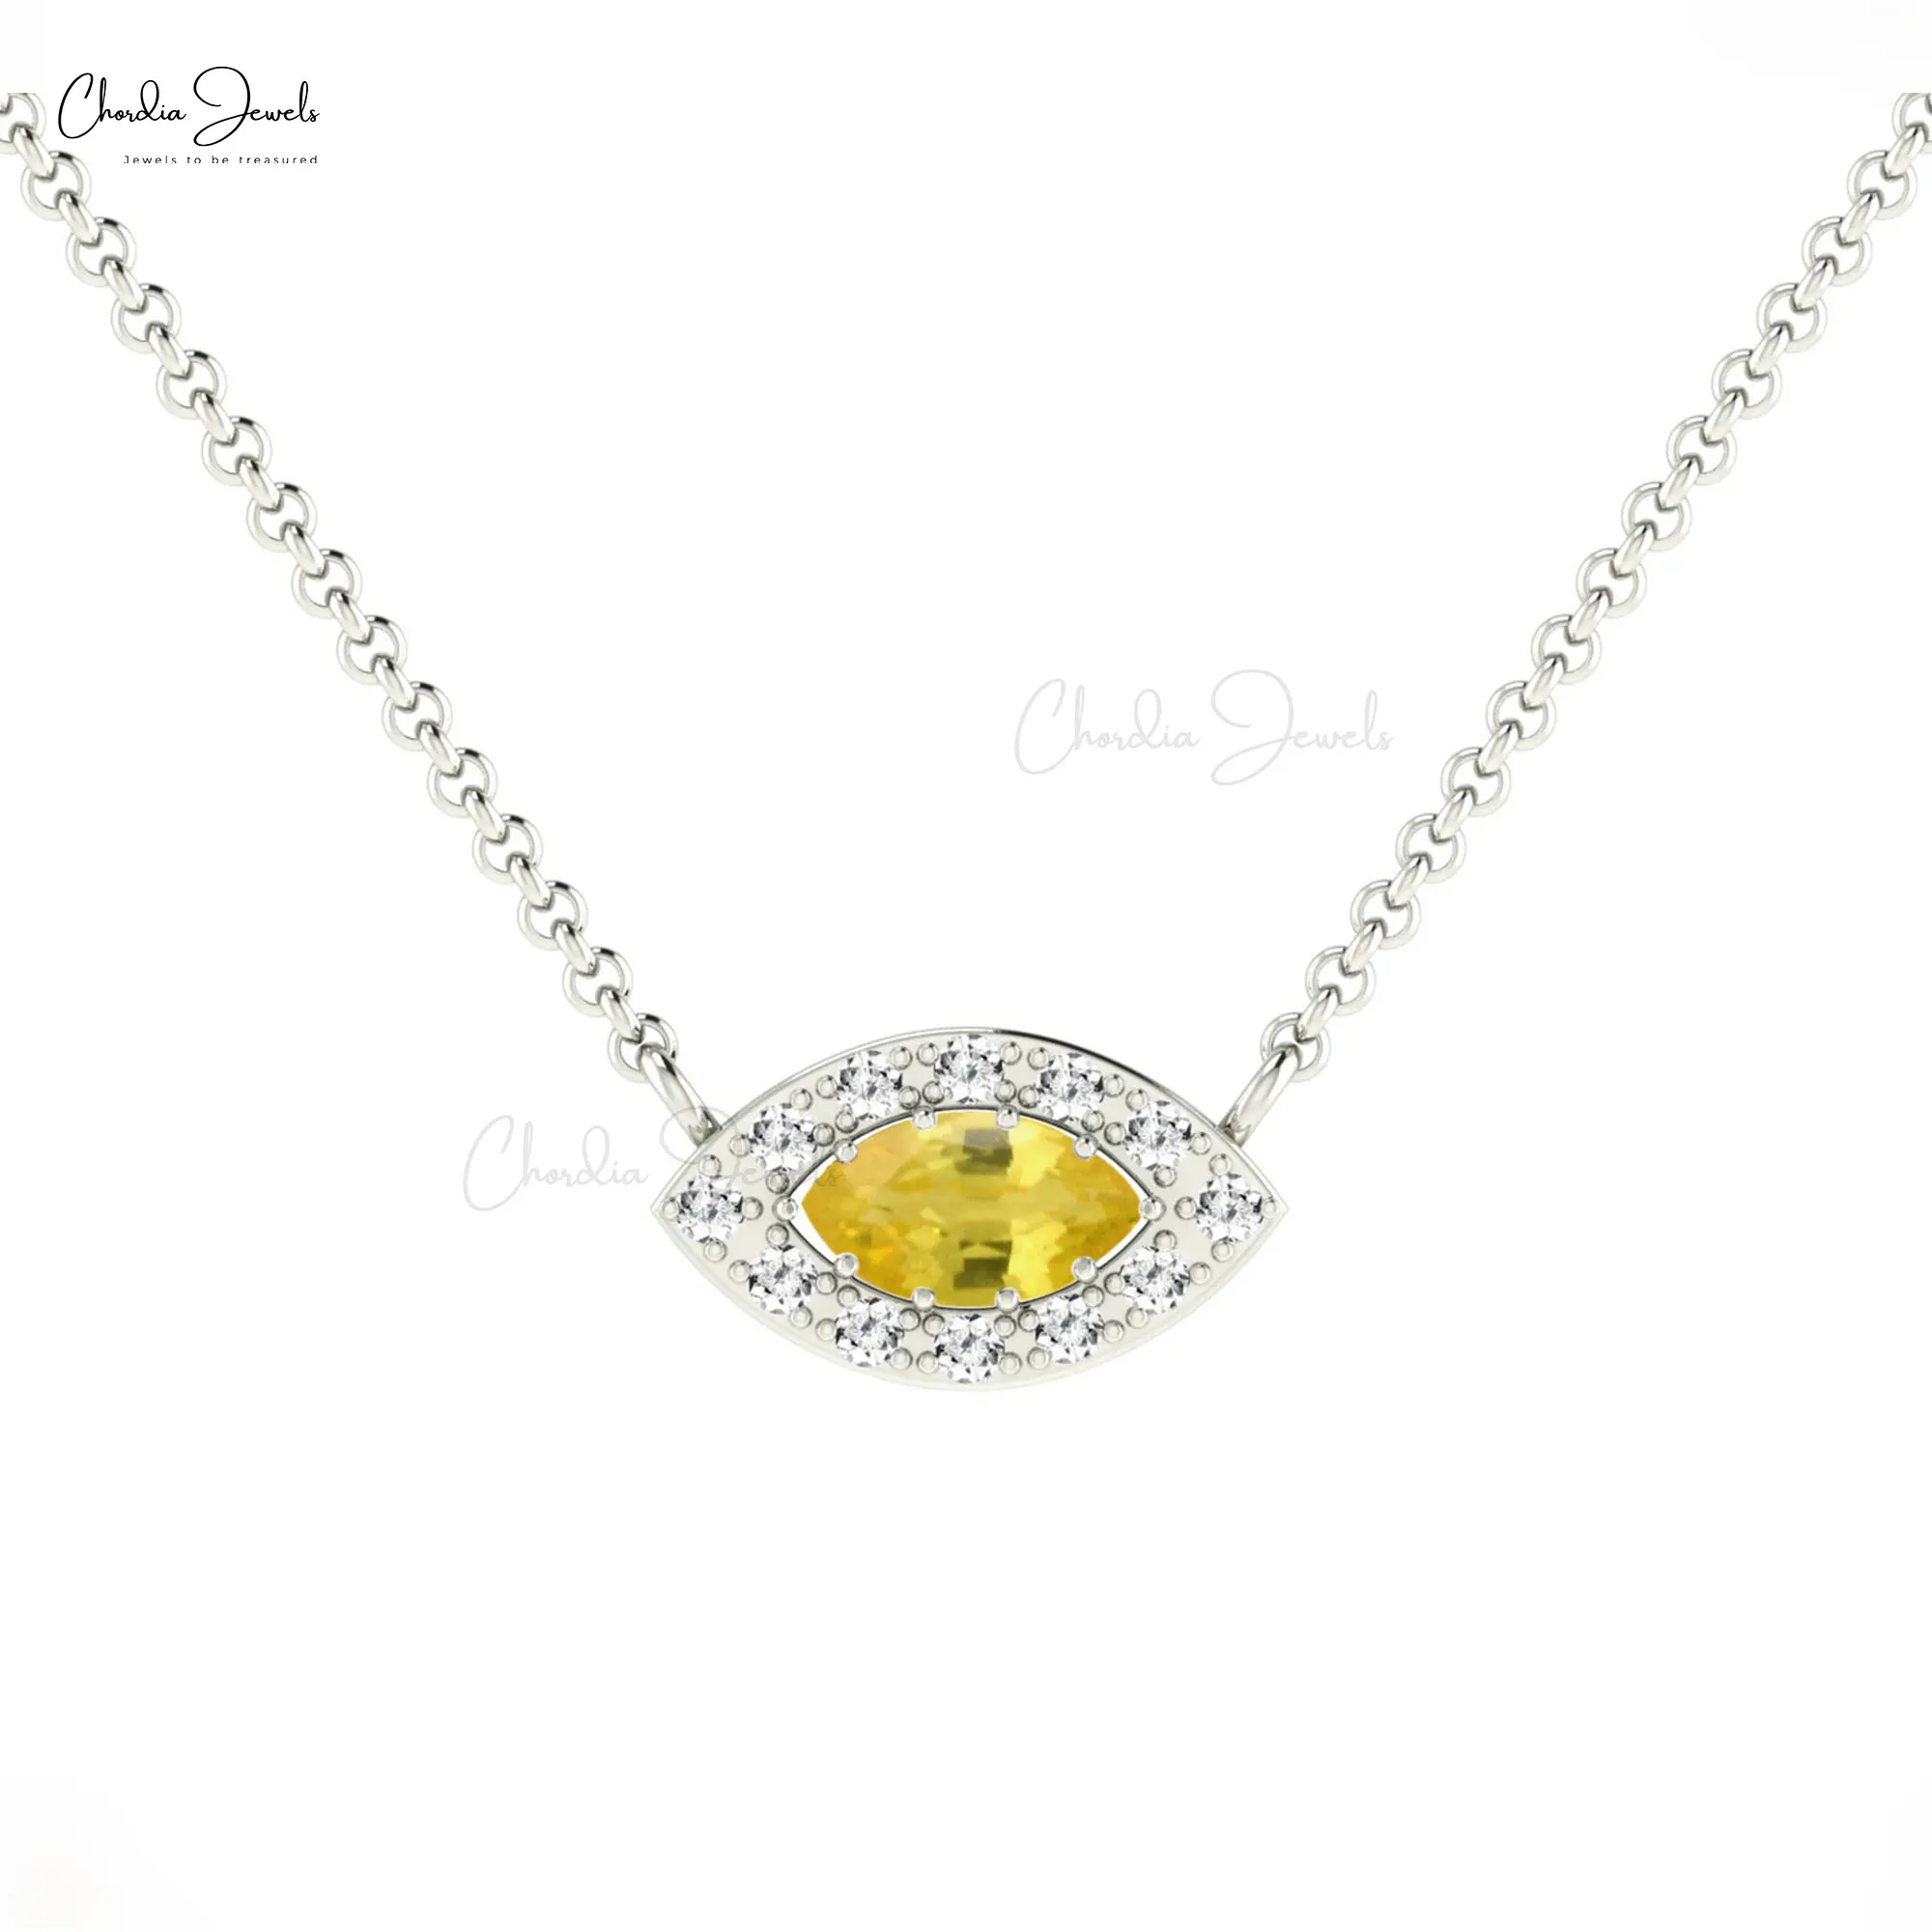 Grosir perhiasan sederhana cahaya mewah berlian Halo kalung liontin alami kuning mata safir kalung dalam 14k emas asli